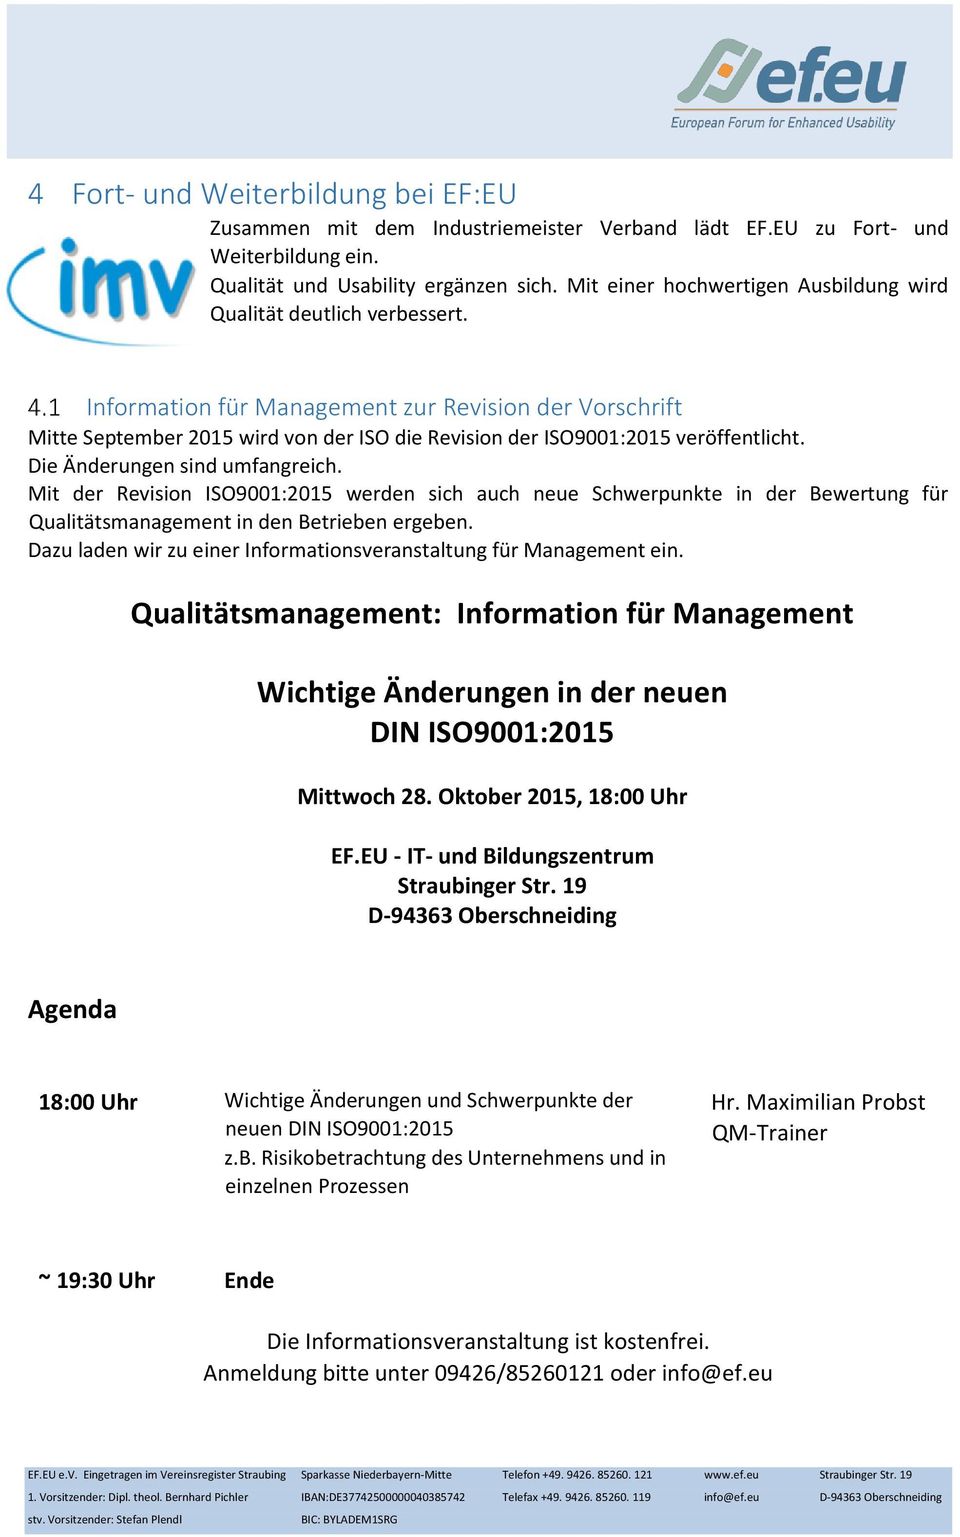 Information für Management zur Revision der Vorschrift Mitte September 2015 wird von der ISO die Revision der ISO9001:2015 veröffentlicht. Die Änderungen sind umfangreich.